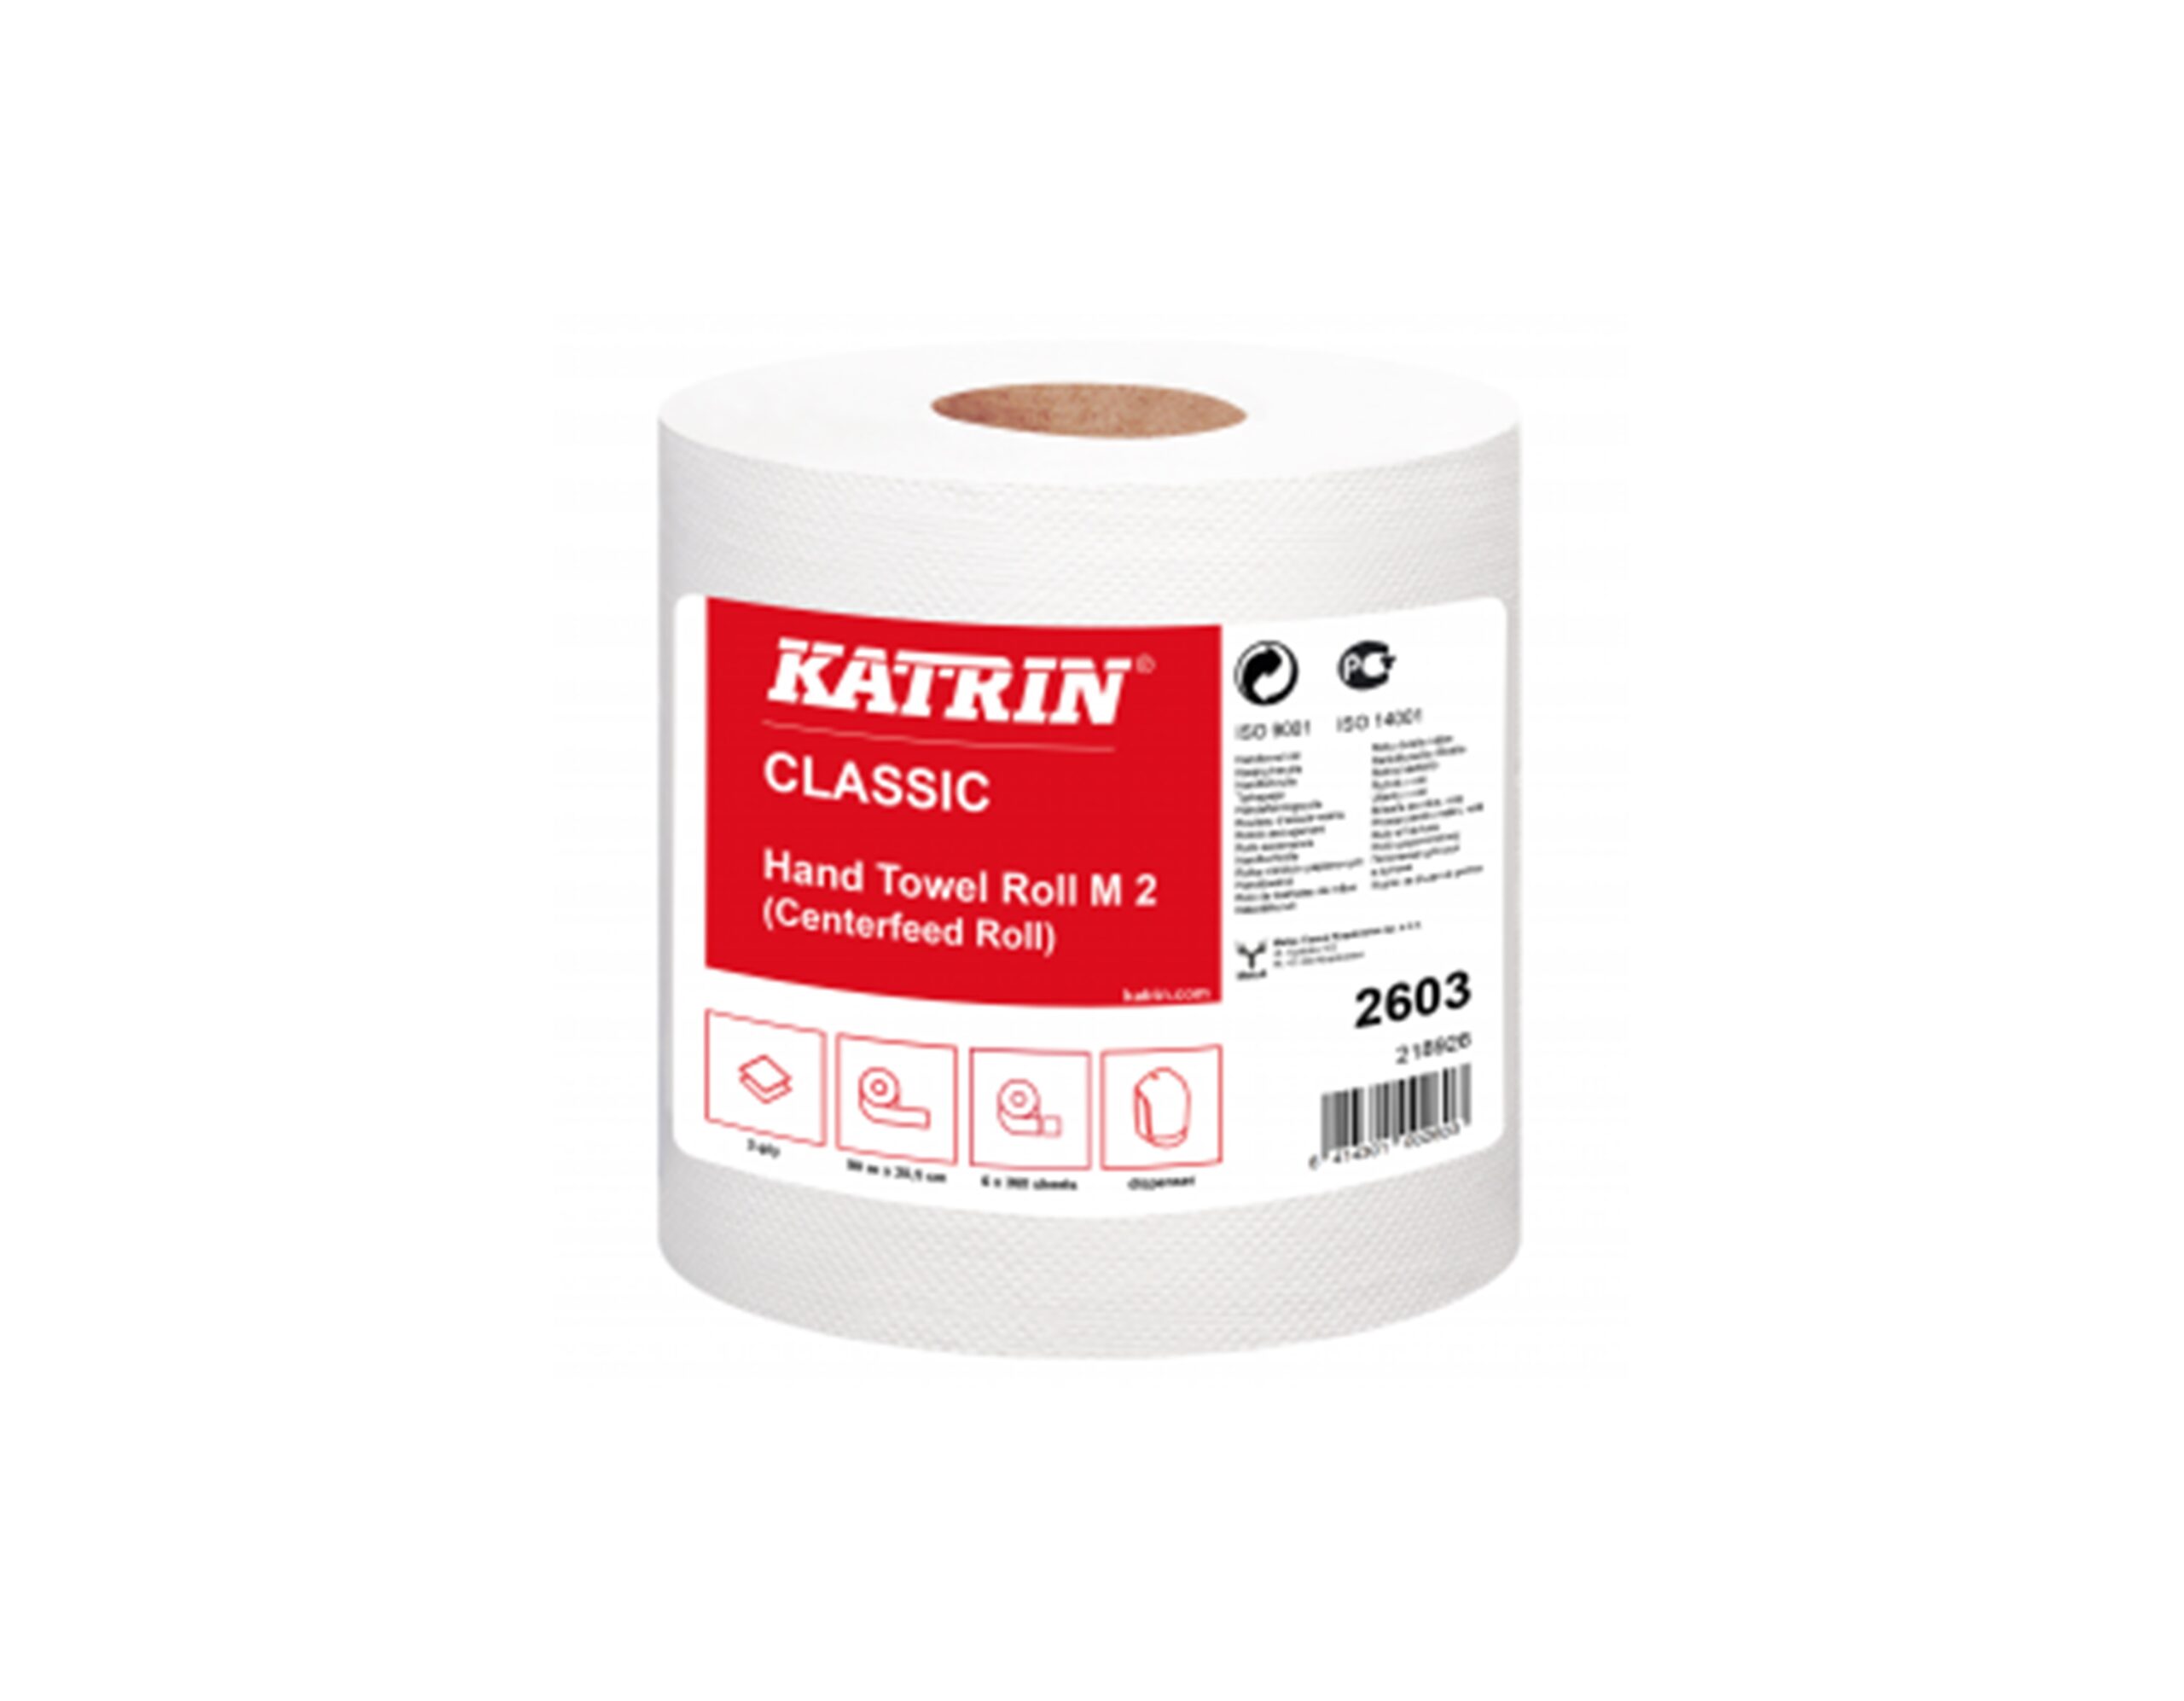 katrin-classic-reczniki-papierowe-biale-rolka-karton-hand-towel-roll-m-2-2603-jedna-rolka